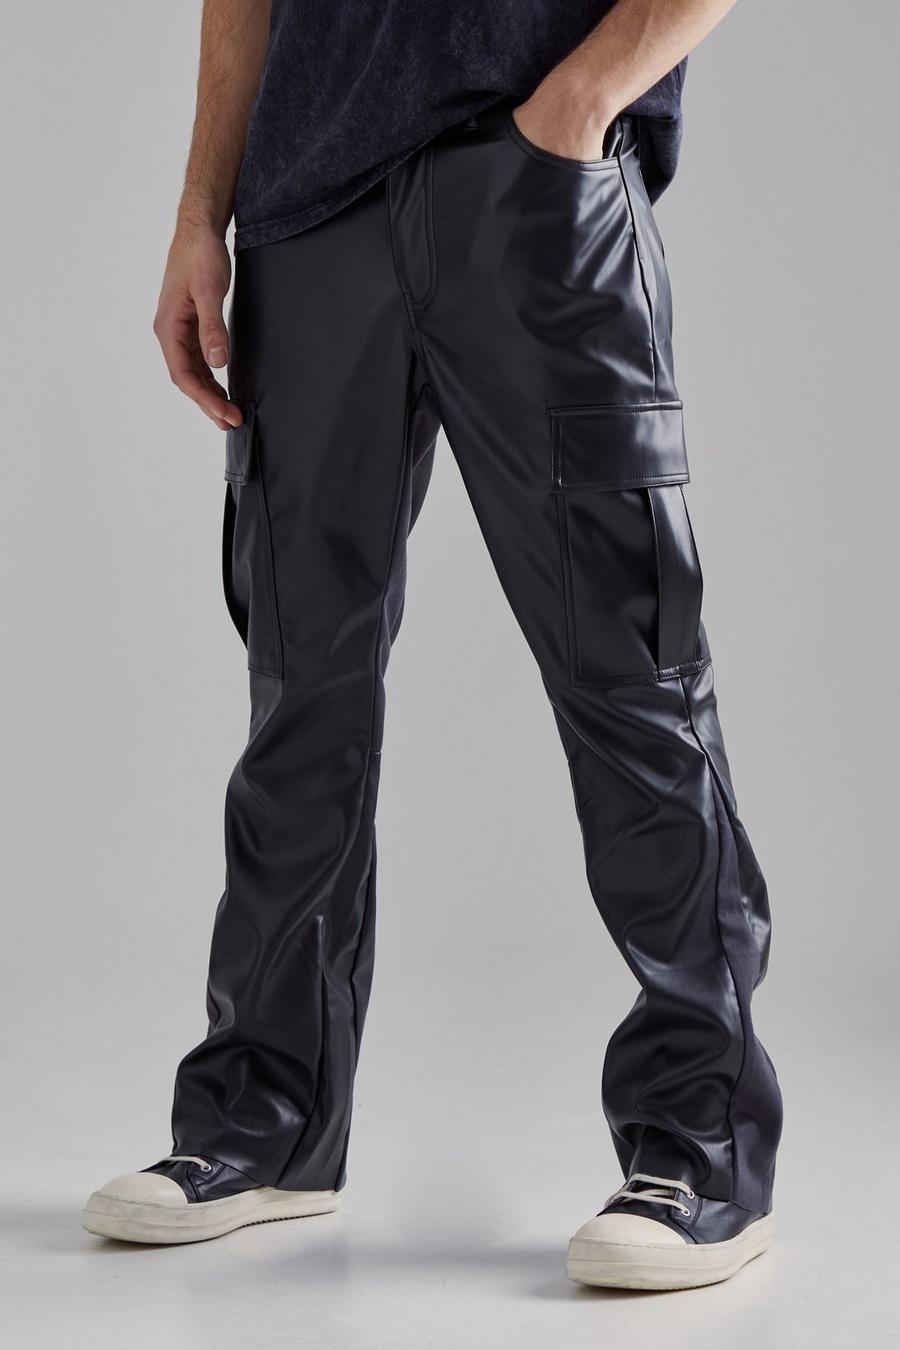 Pantaloni a zampa stile Cargo con inserti in PU, Black